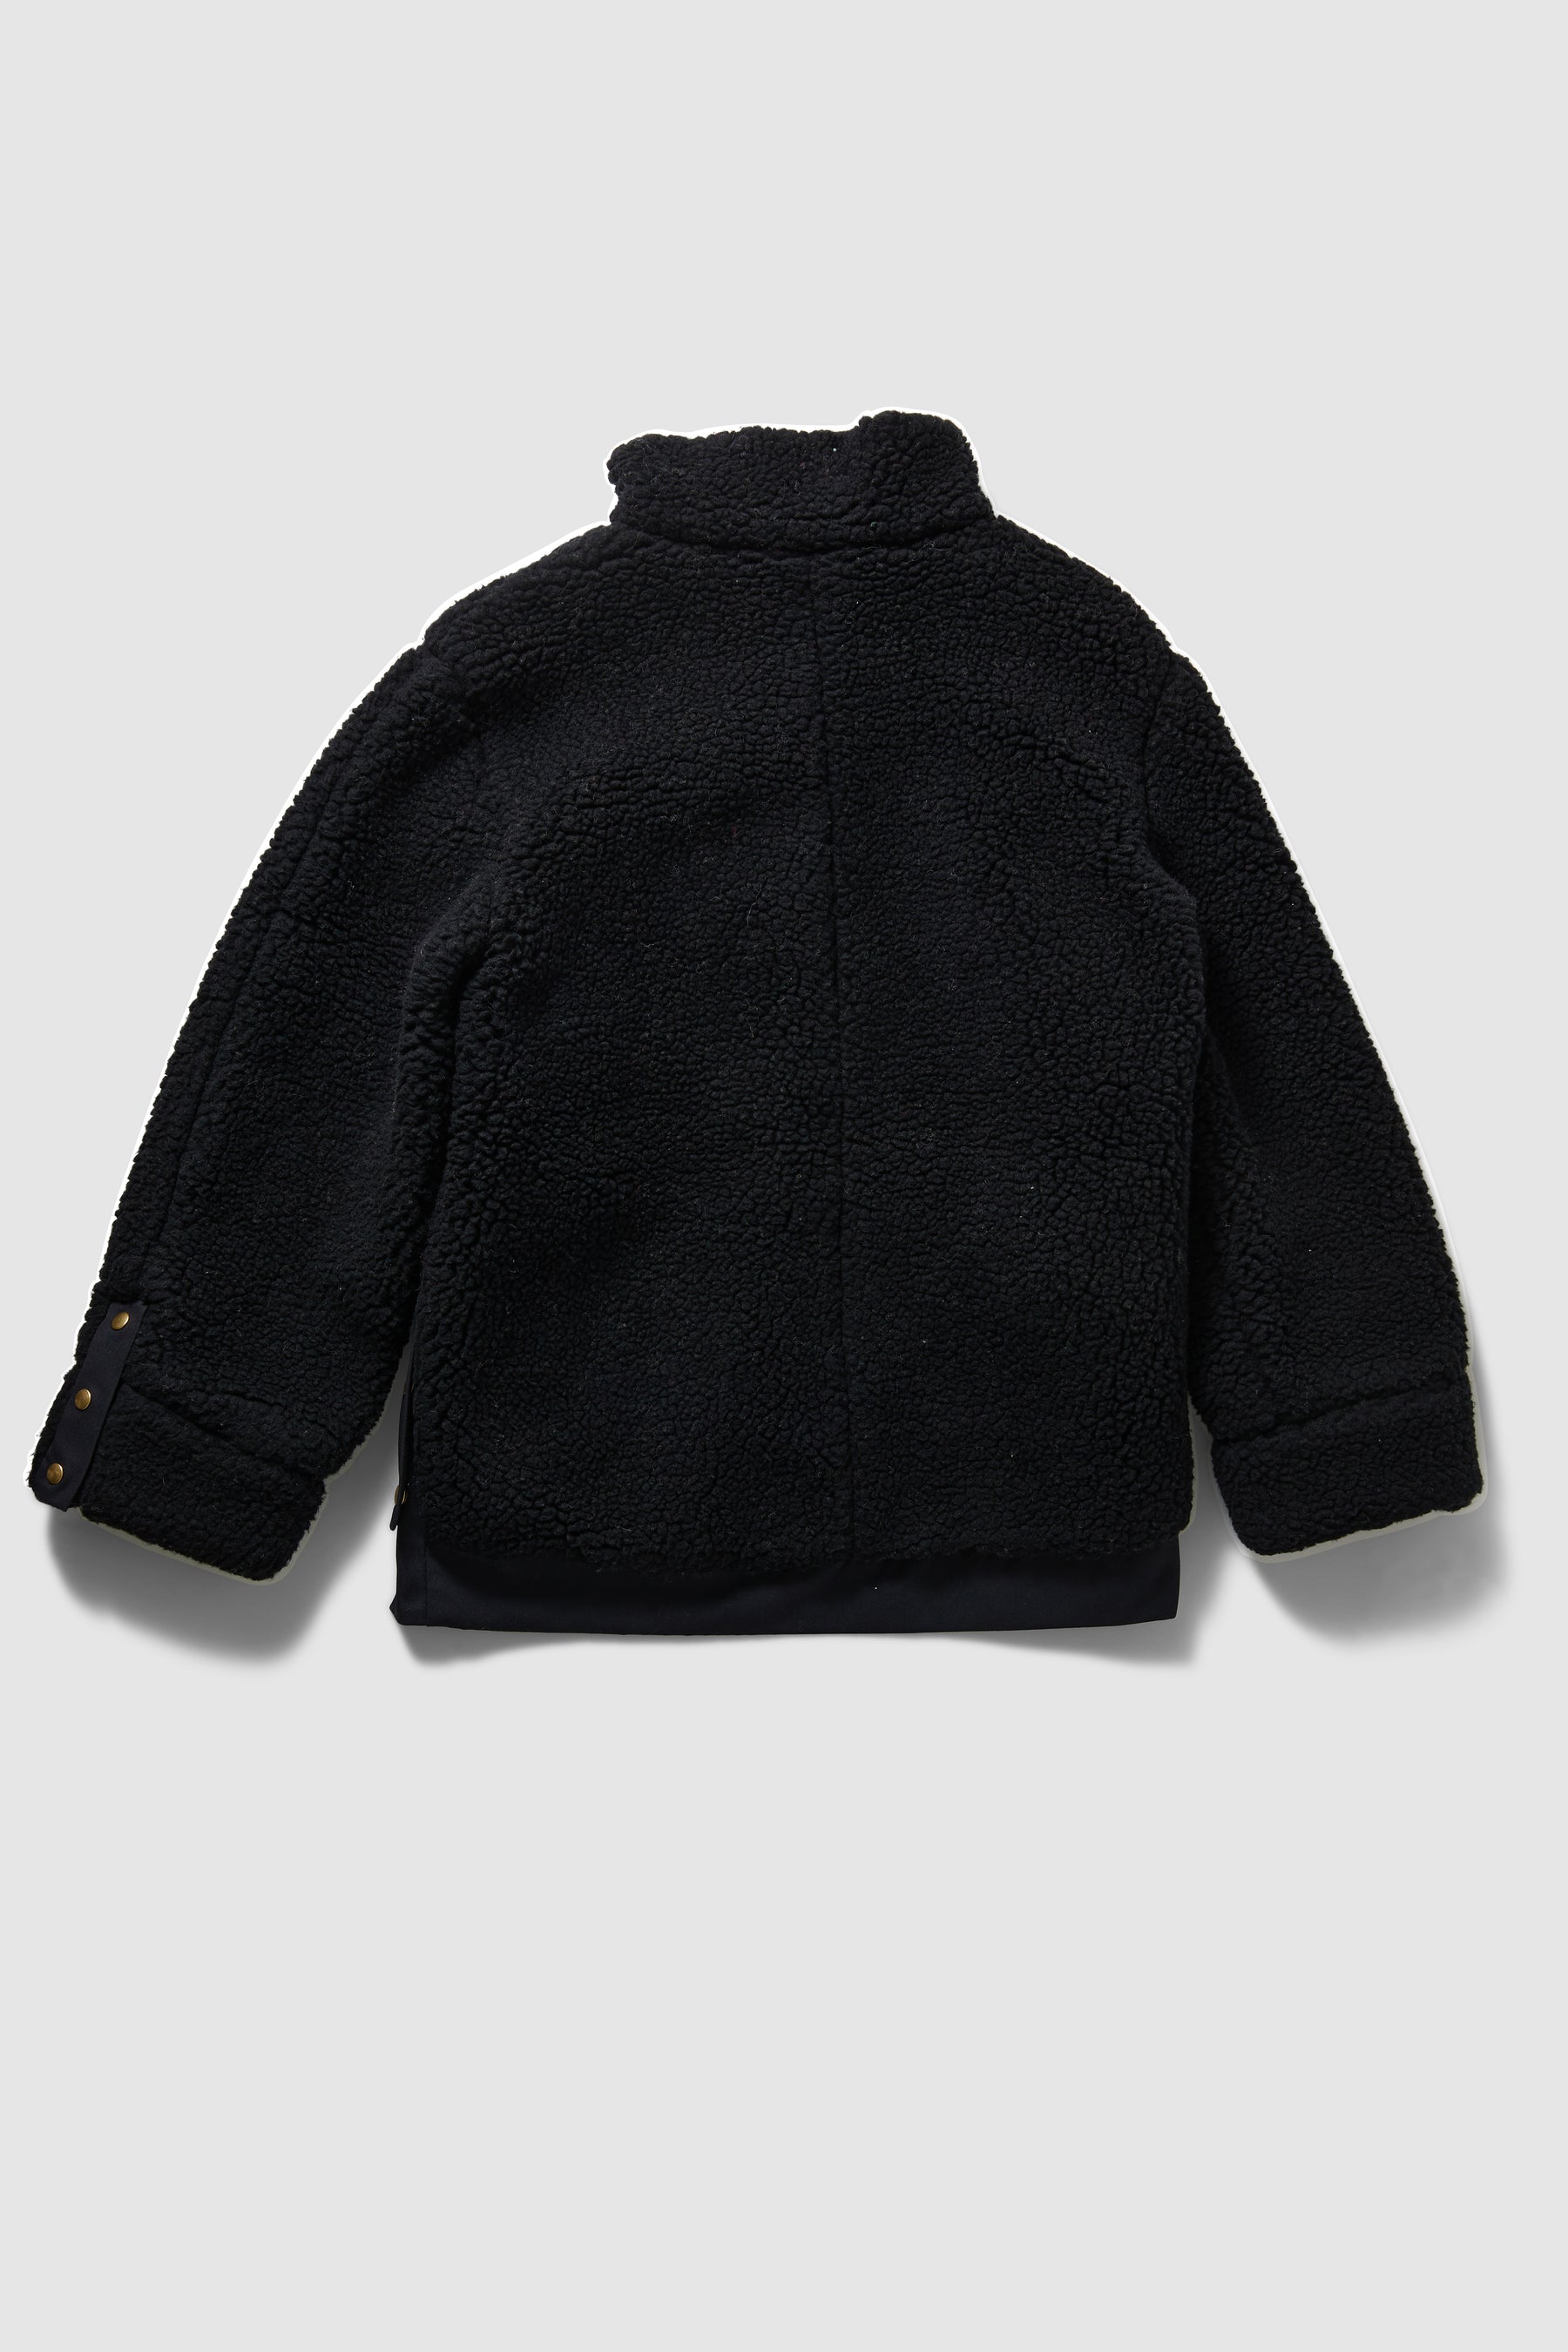 Idol jacket in black wool